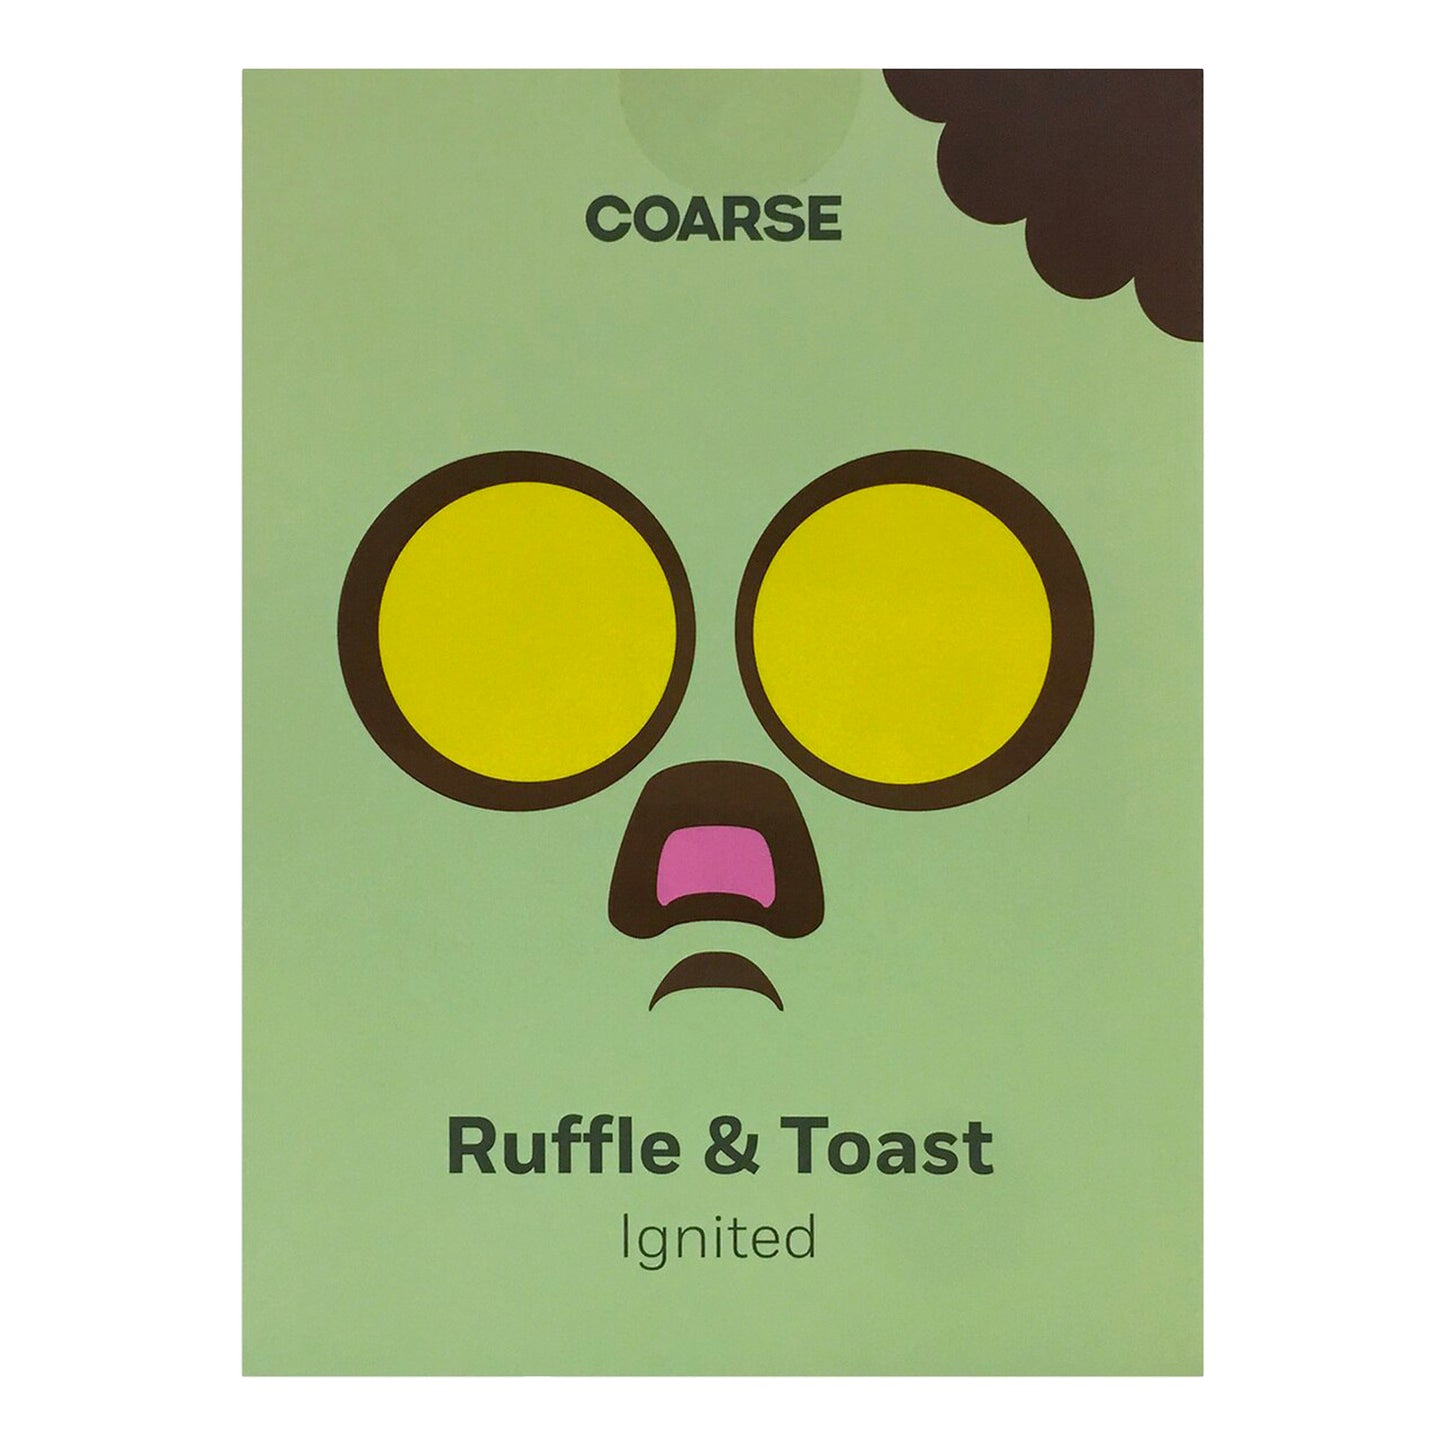 Playhouse x Coarse: Ruffle & Toast - Ignited! 7" Vinyl Figure